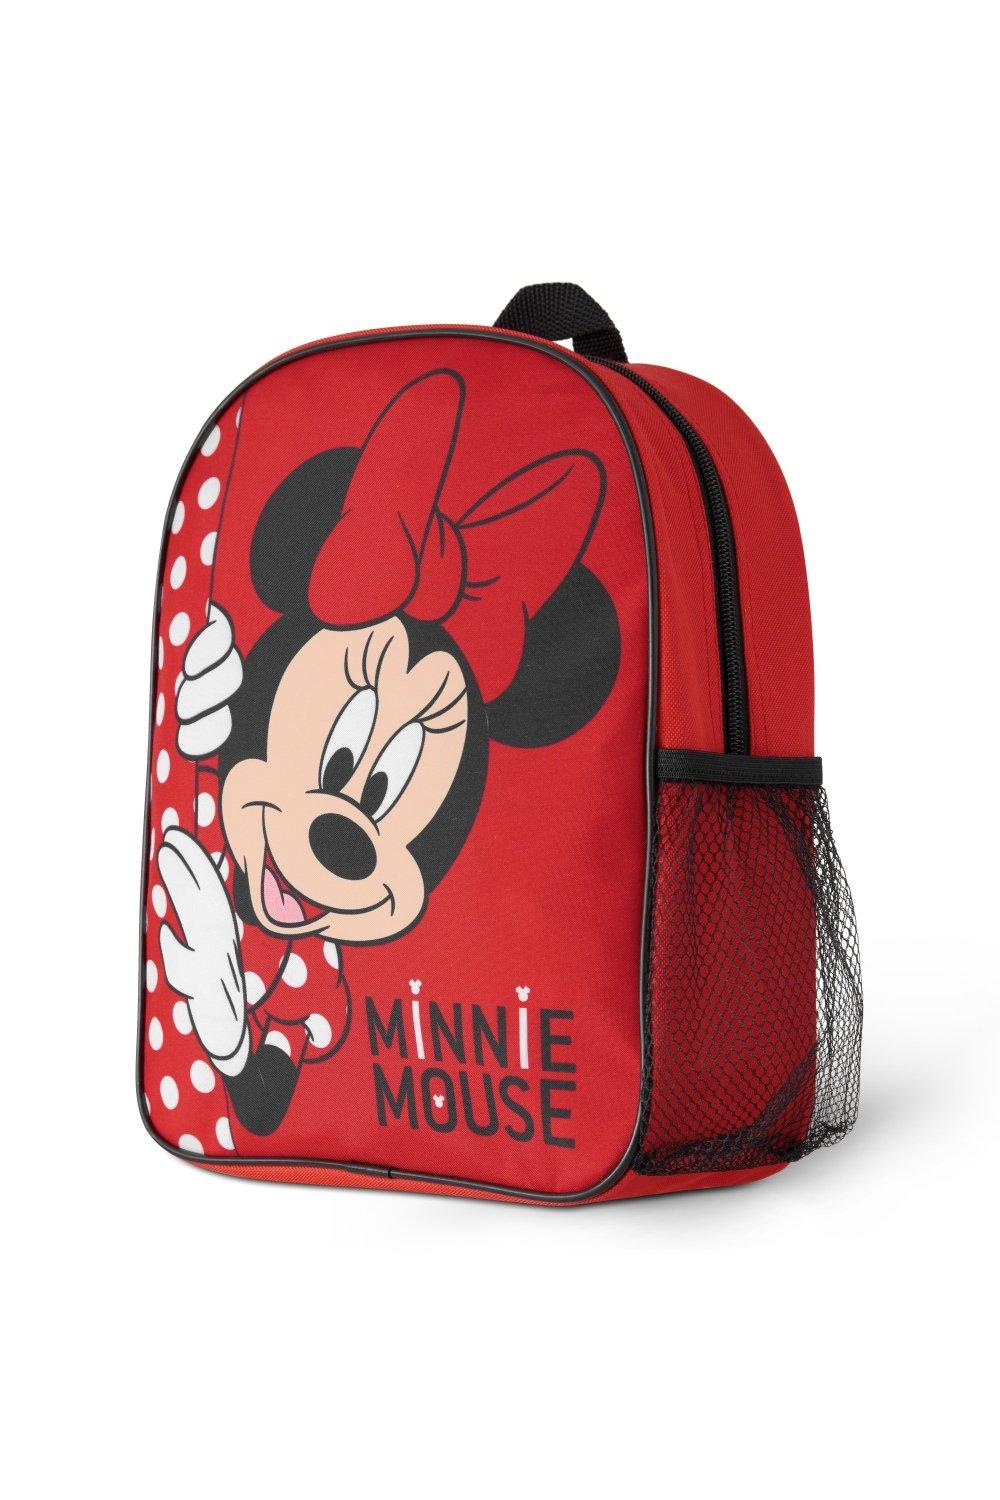 Рюкзак для девочек Минни Маус Disney, красный набор для дня рождения минни маус и единорог гирлянда 2 4 м дождик 1х2 м минни маус